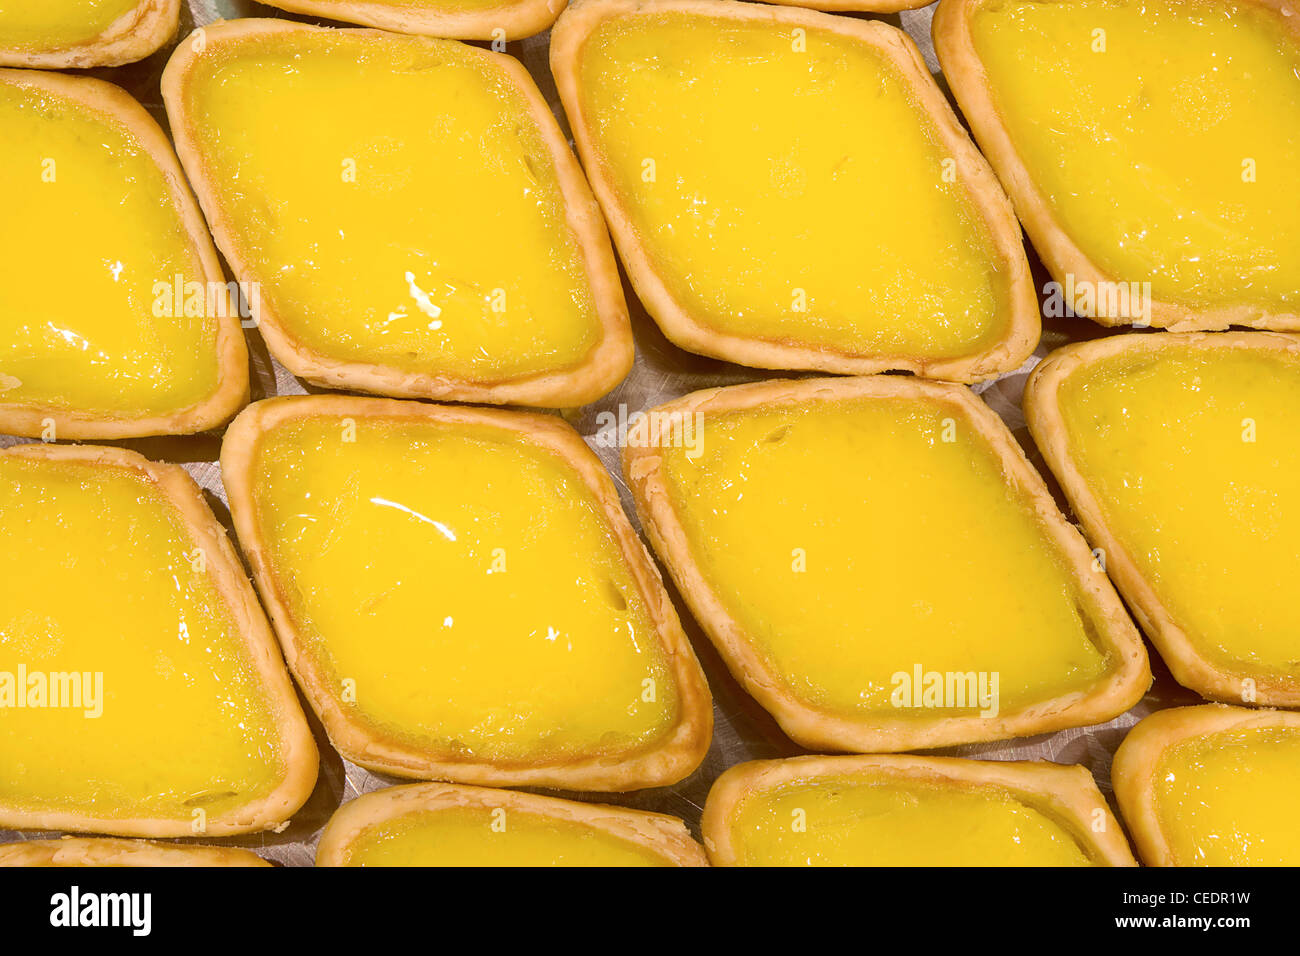 Singapore, egg tarts Stock Photo